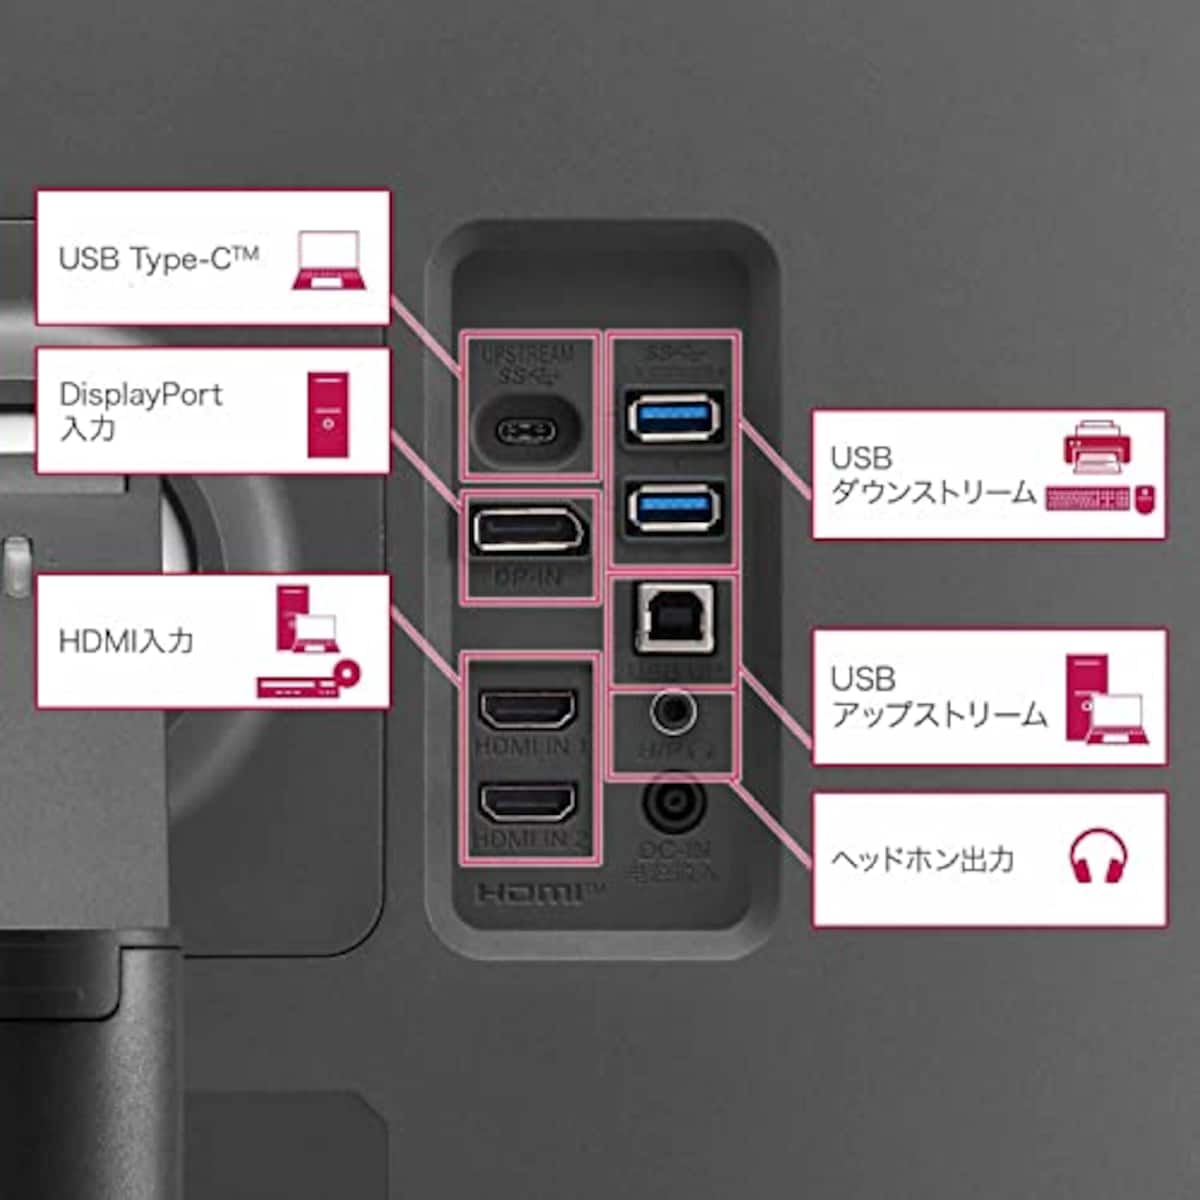  【Amazon.co.jp 限定】LG デュアルアップ モニター28MQ750-C 27.6インチ/作業効率アップ、プログラミング、グラフィック/16:18 SDQHD(2560×2880) /Nano IPS非光沢/DCI-P3 98%/2倍の画面で、2倍の体験/スピーカー搭載/高さ調節、傾き調整、ピボット対応/USB Type-C、HDMI×2、DisplayPort/3年安心・無輝点保証画像3 